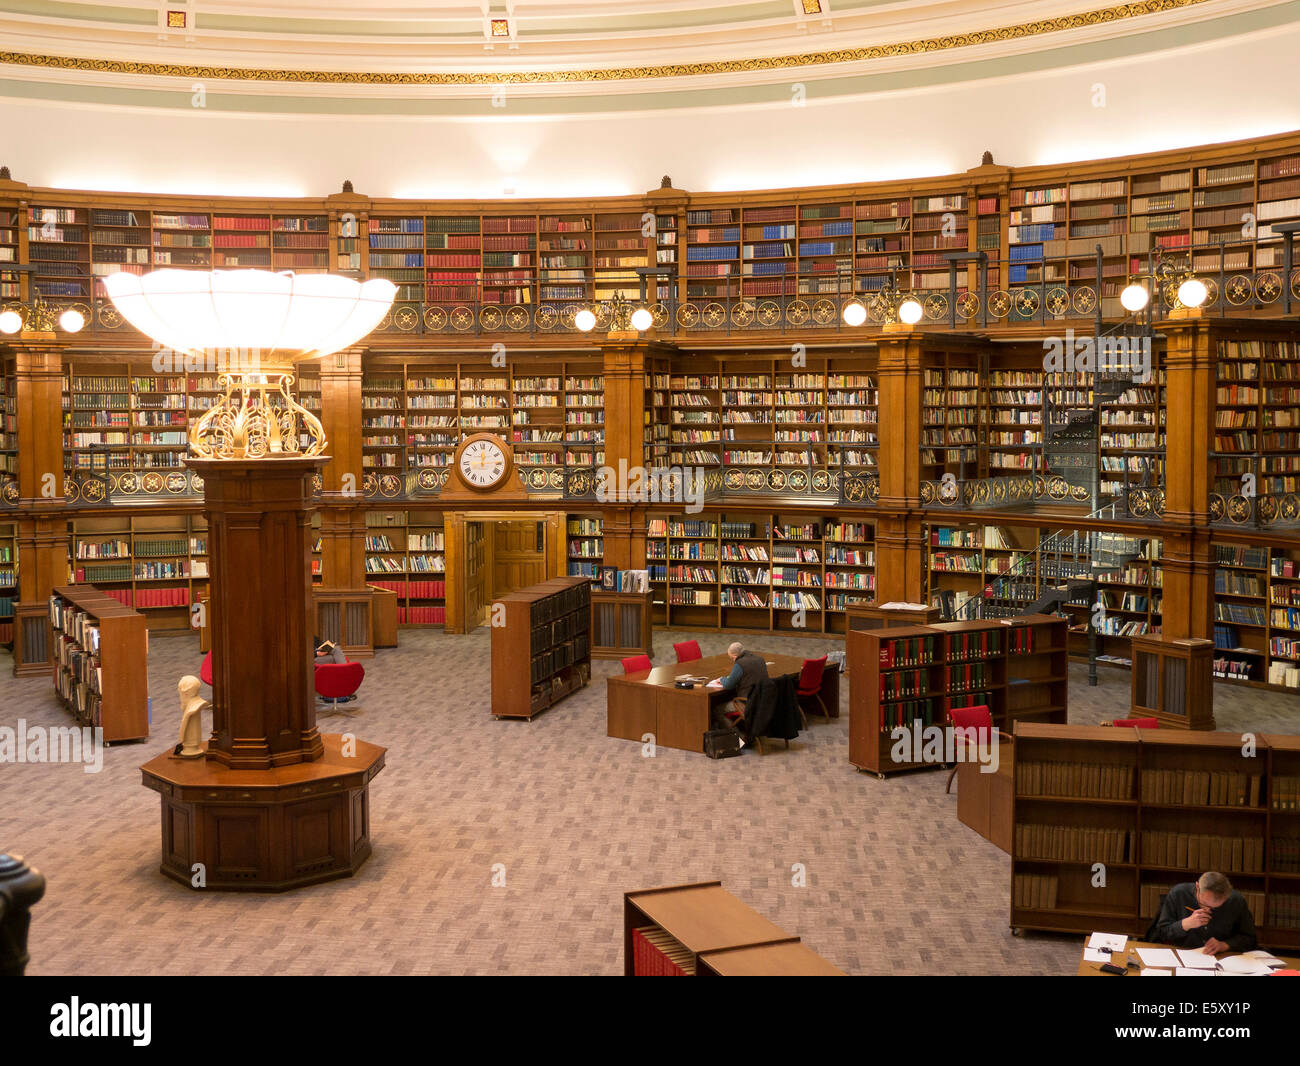 Bibliothèque centrale de Liverpool. Bibliothèque de référence inerior traditionnels Banque D'Images